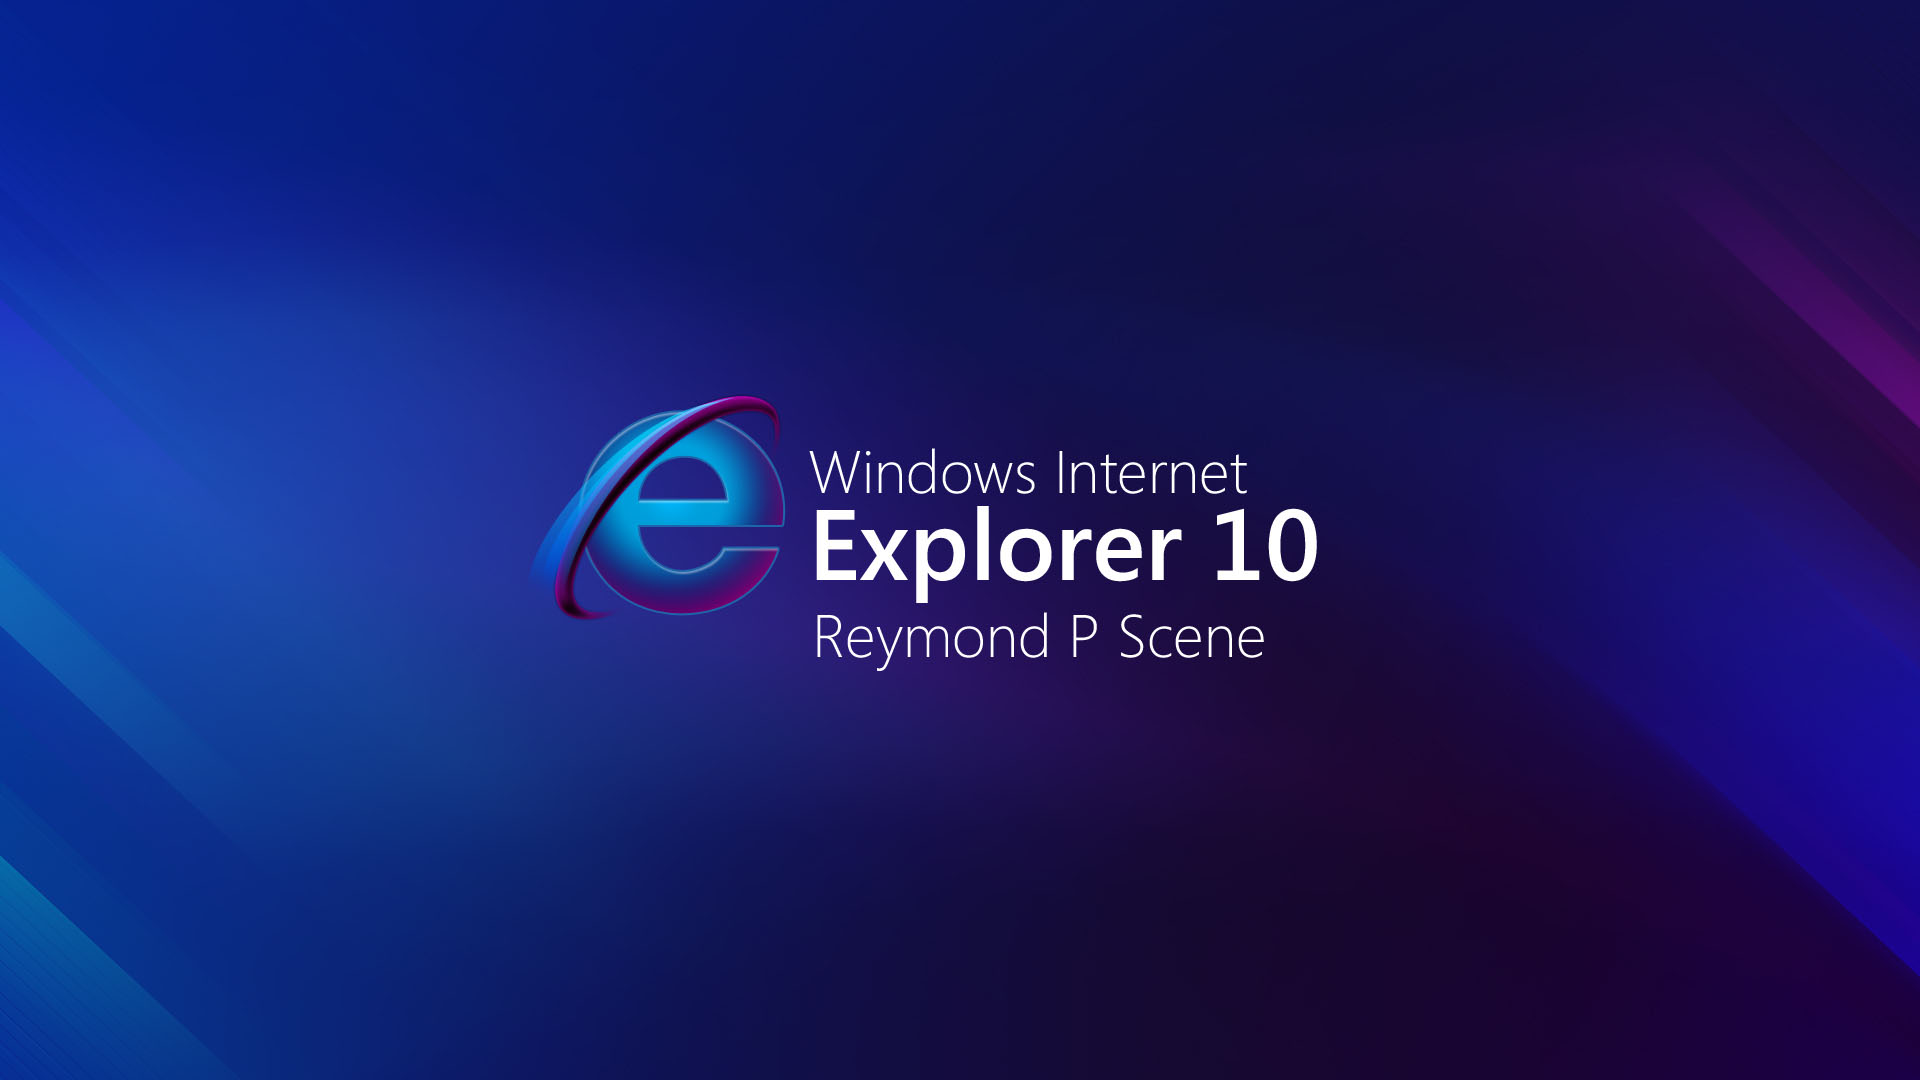 Windows 10 internet. Интернет эксплорер виндовс 10. Internet Explorer 10 для Windows 10. Светлые обои Windows 11. Интернет эксплорер обои.